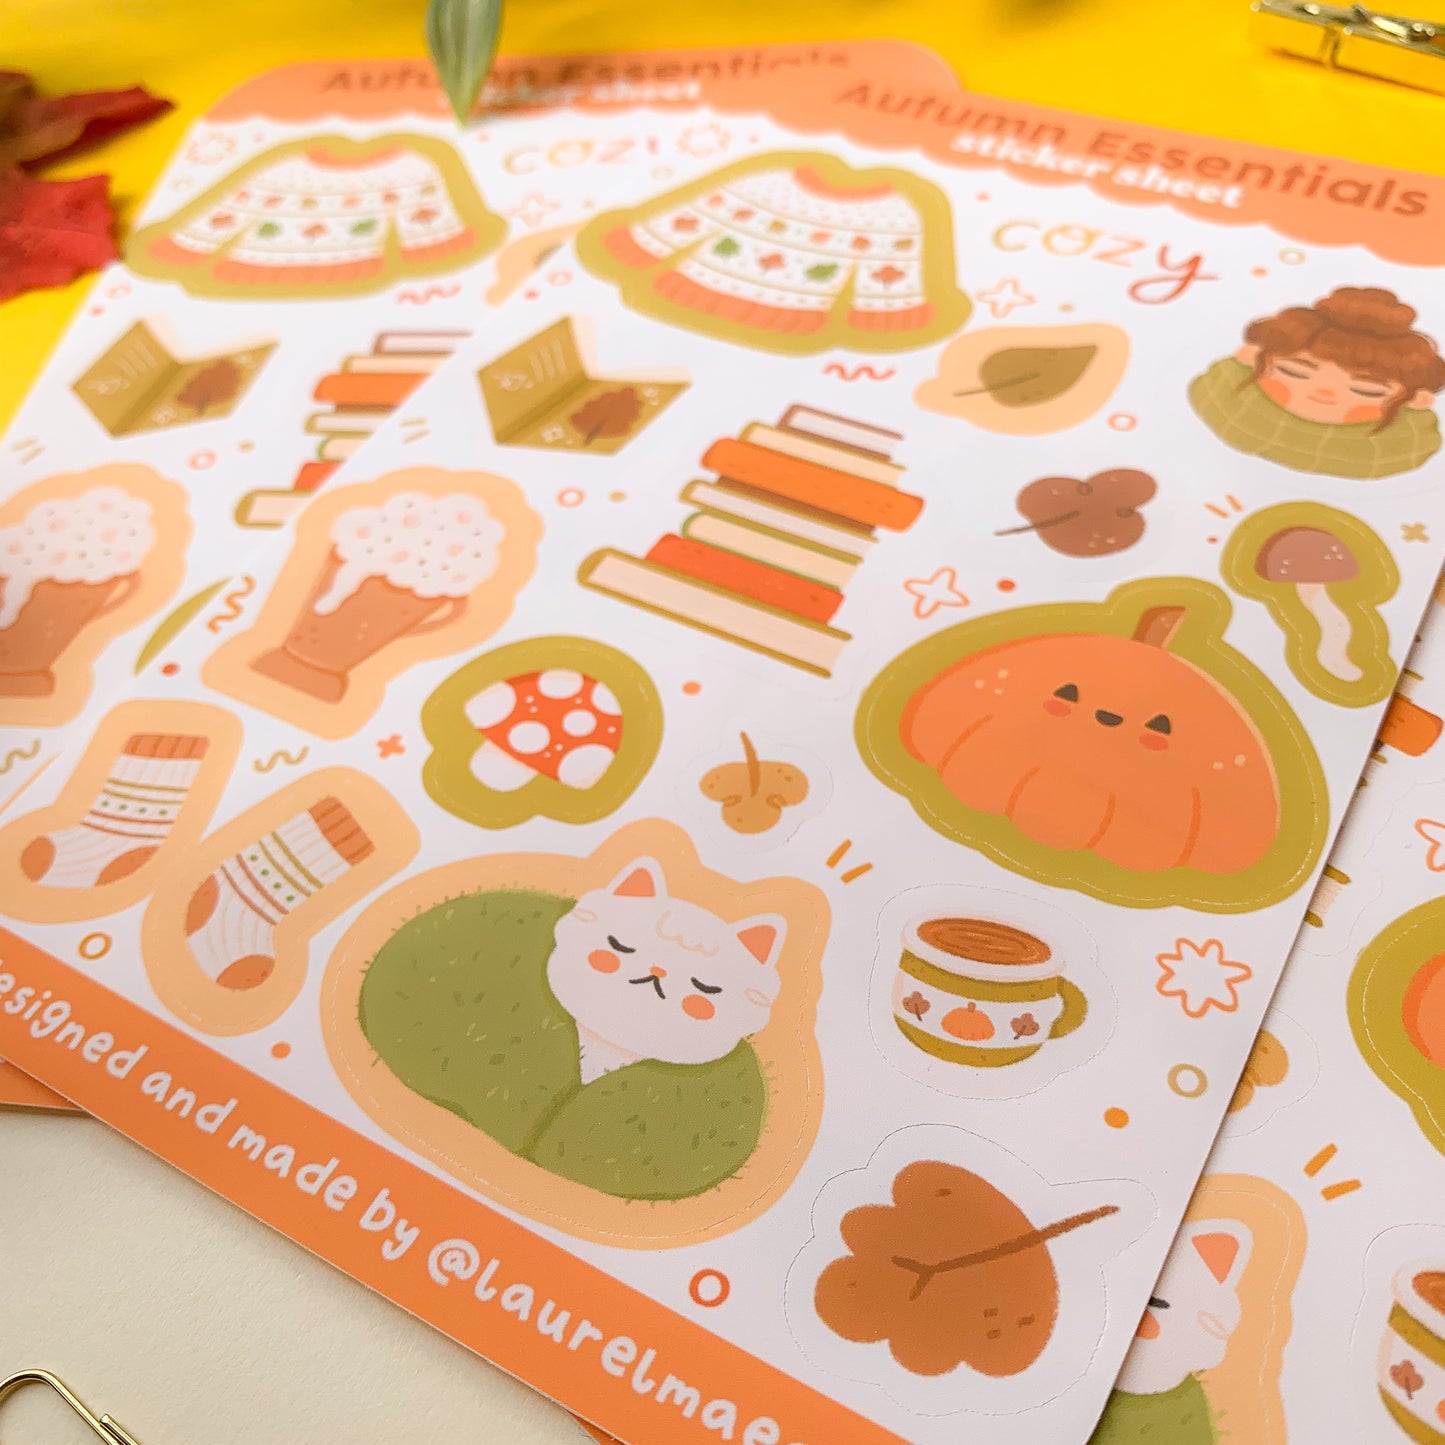 Autumn Essentials - Sticker Sheet